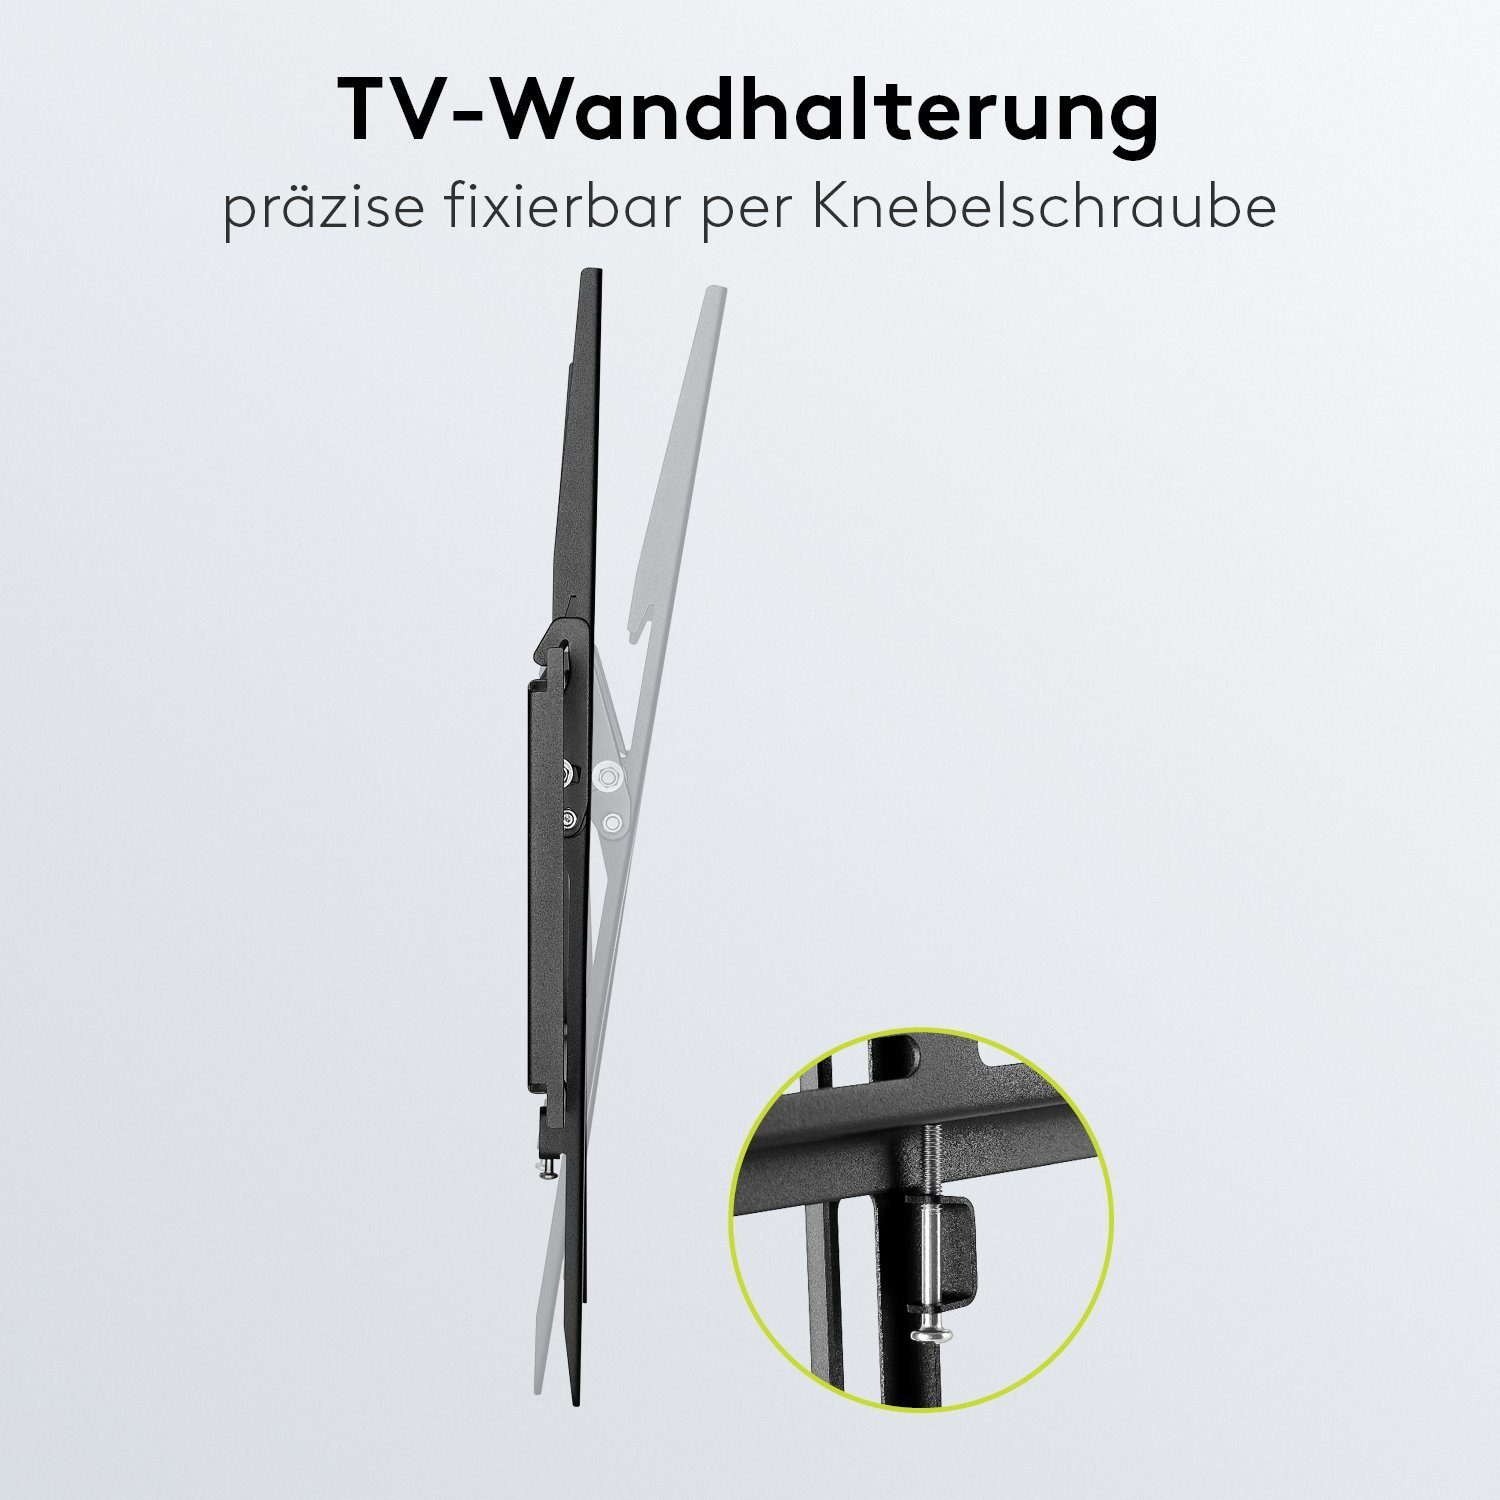 Goobay TV-Wandhalterung Basic Zoll, kg neigbar 35 / TV-Wandhalterung, 8° (bis (L) / 70,00 Schwarz) TILT Zubehör, Traglast inkl